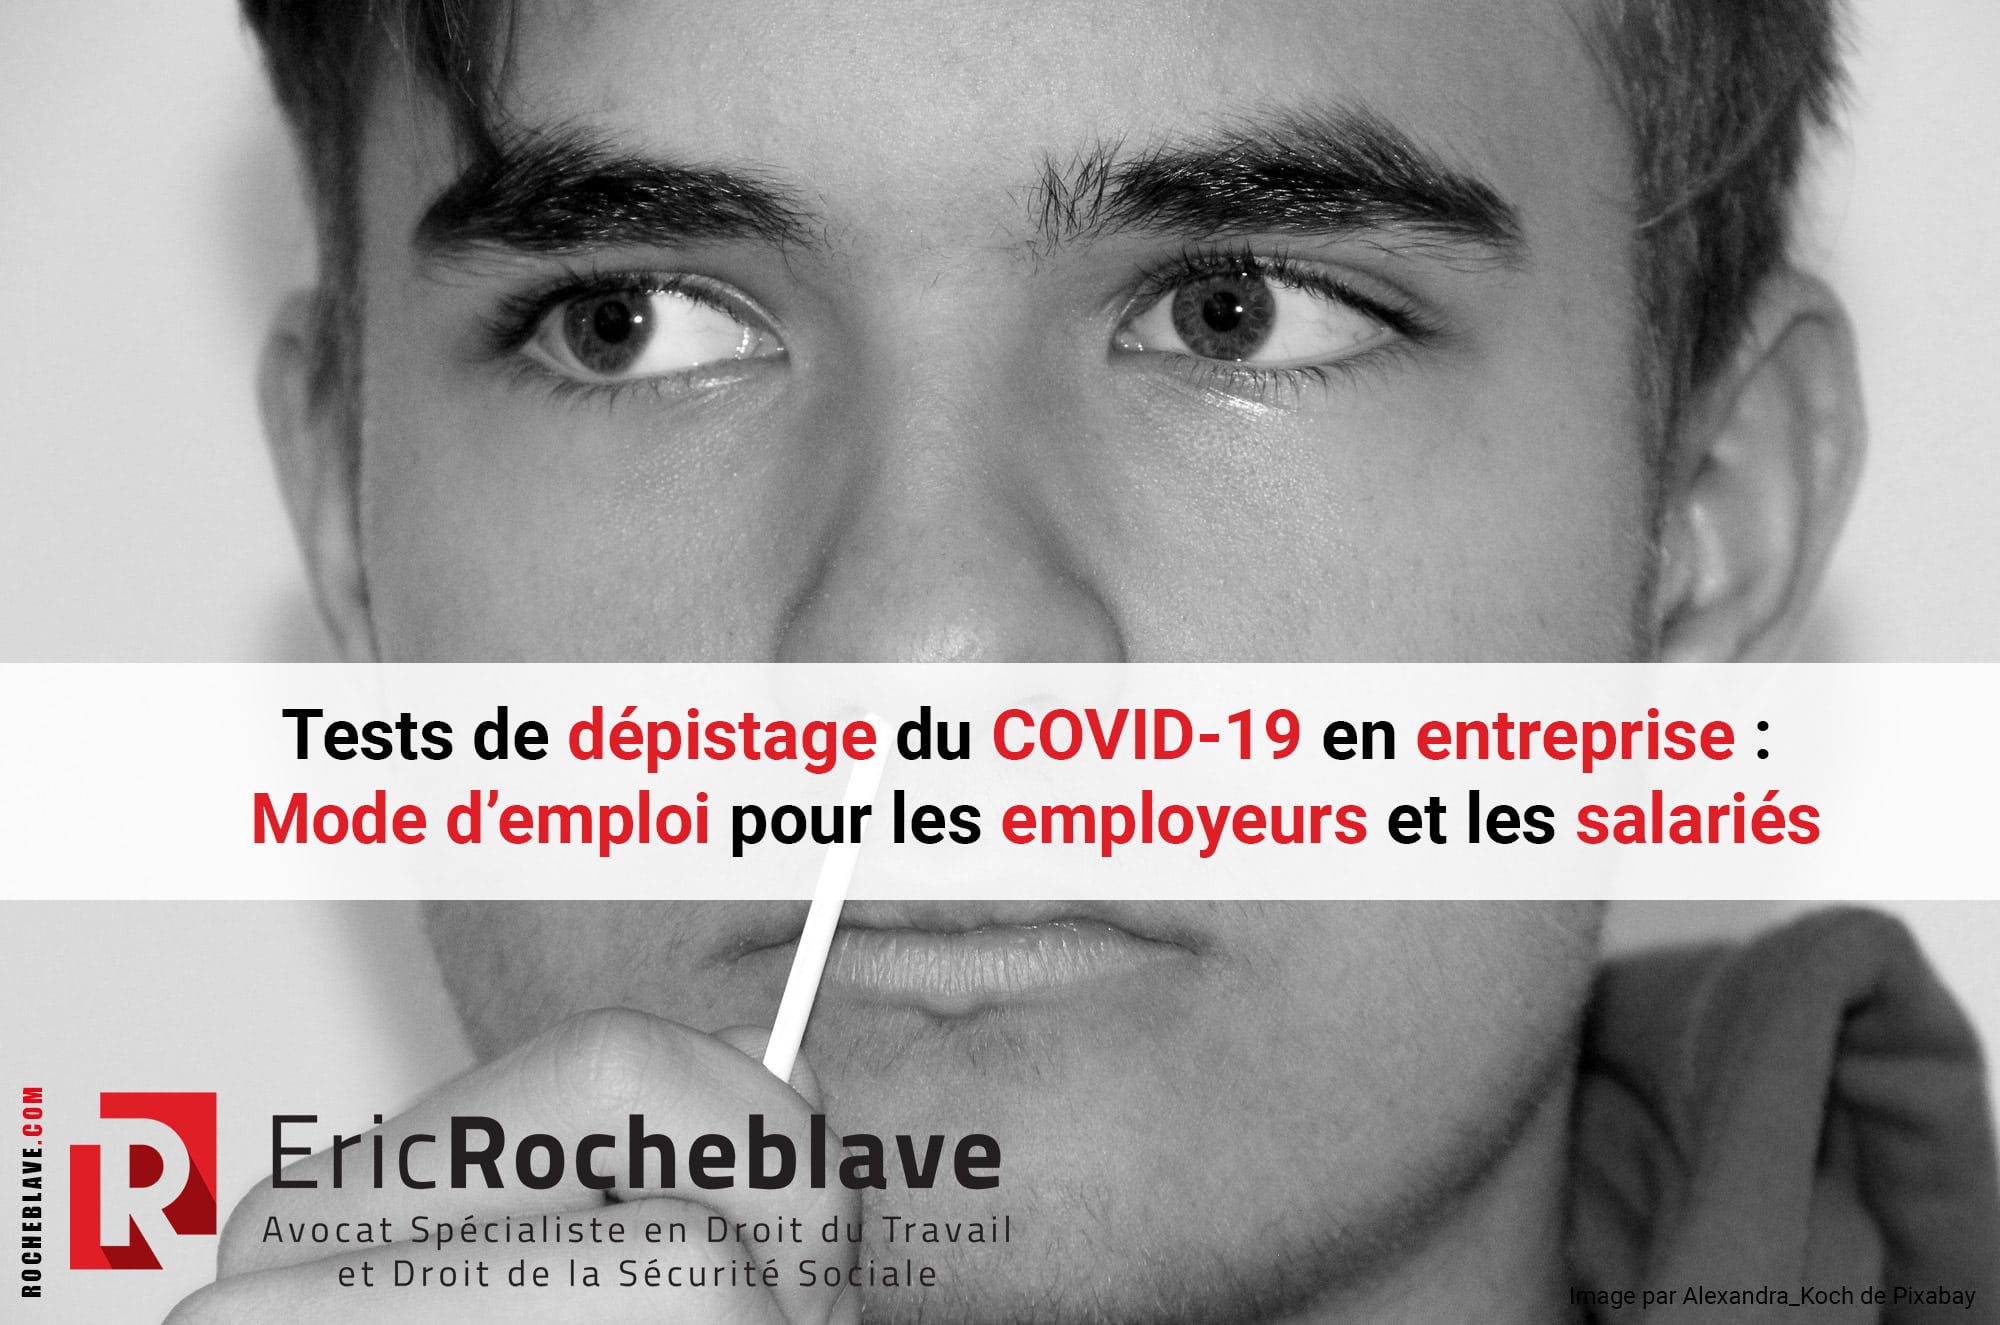 Tests de dépistage du COVID-19 en entreprise : Mode d’emploi pour les employeurs et les salariés